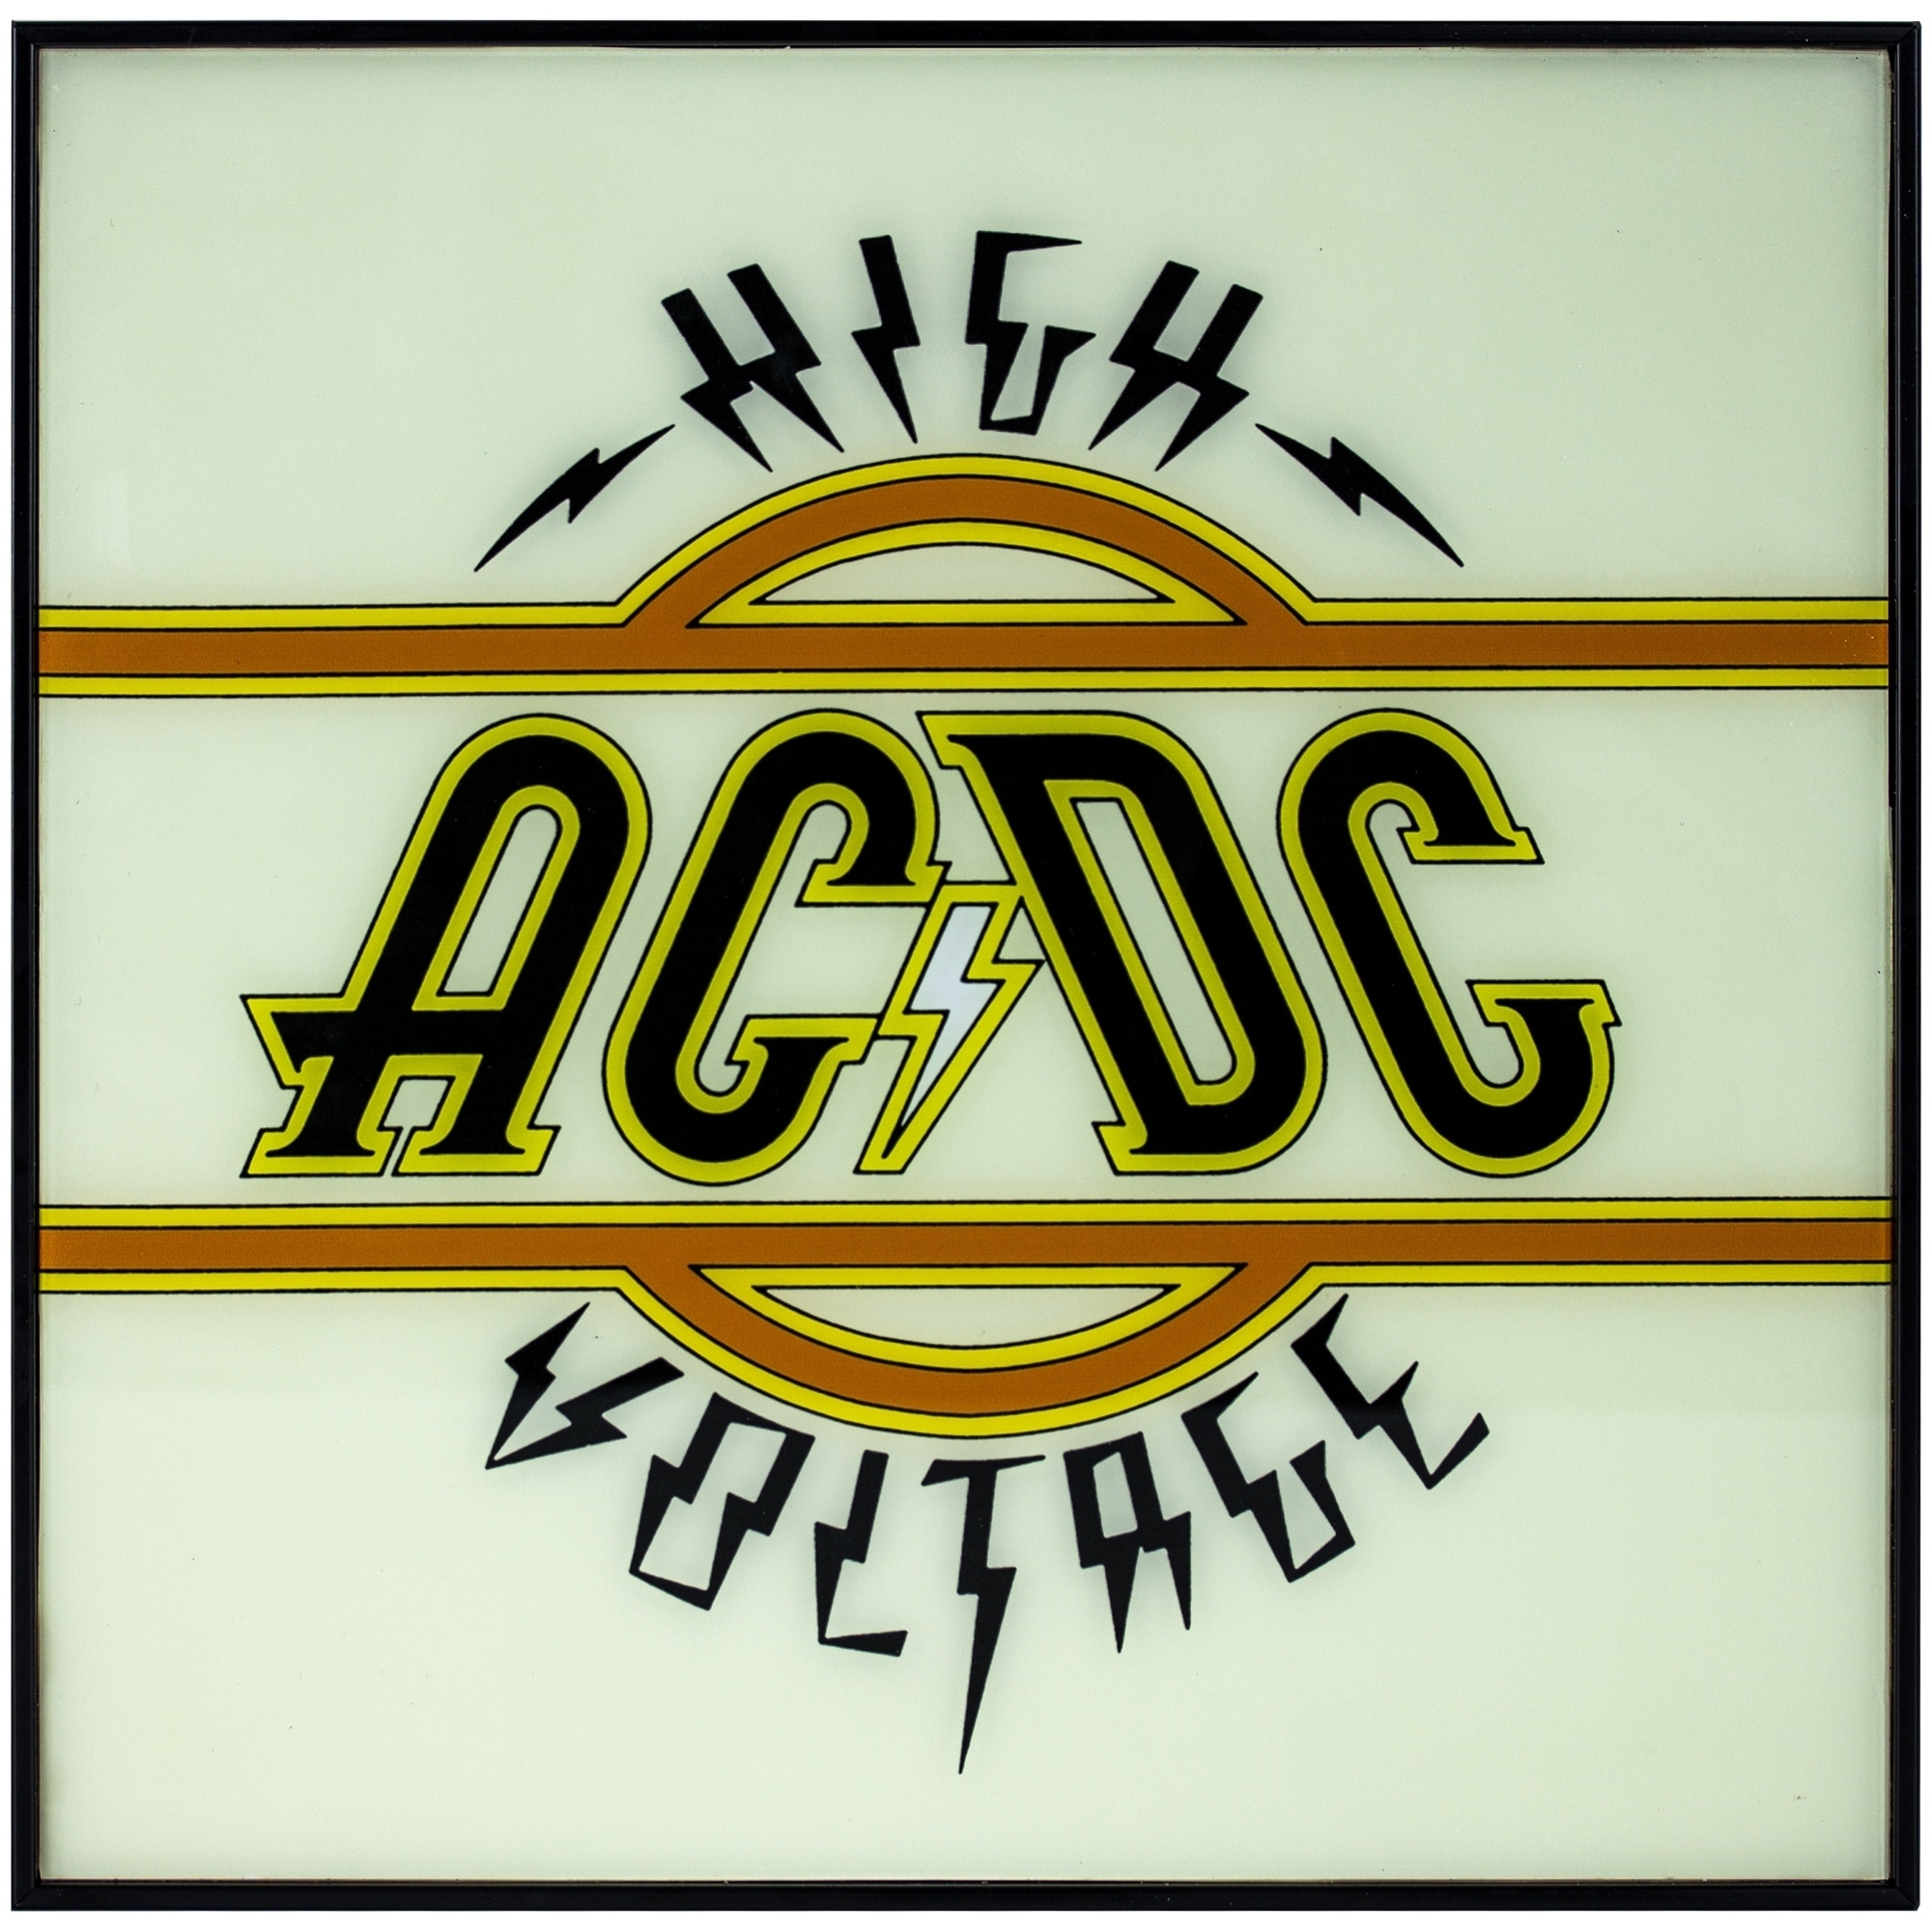 High voltage ac dc. AC DC High Voltage обложка. AC DC 1975. AC DC High Voltage 1975. AC DC Хай Вольтаж.